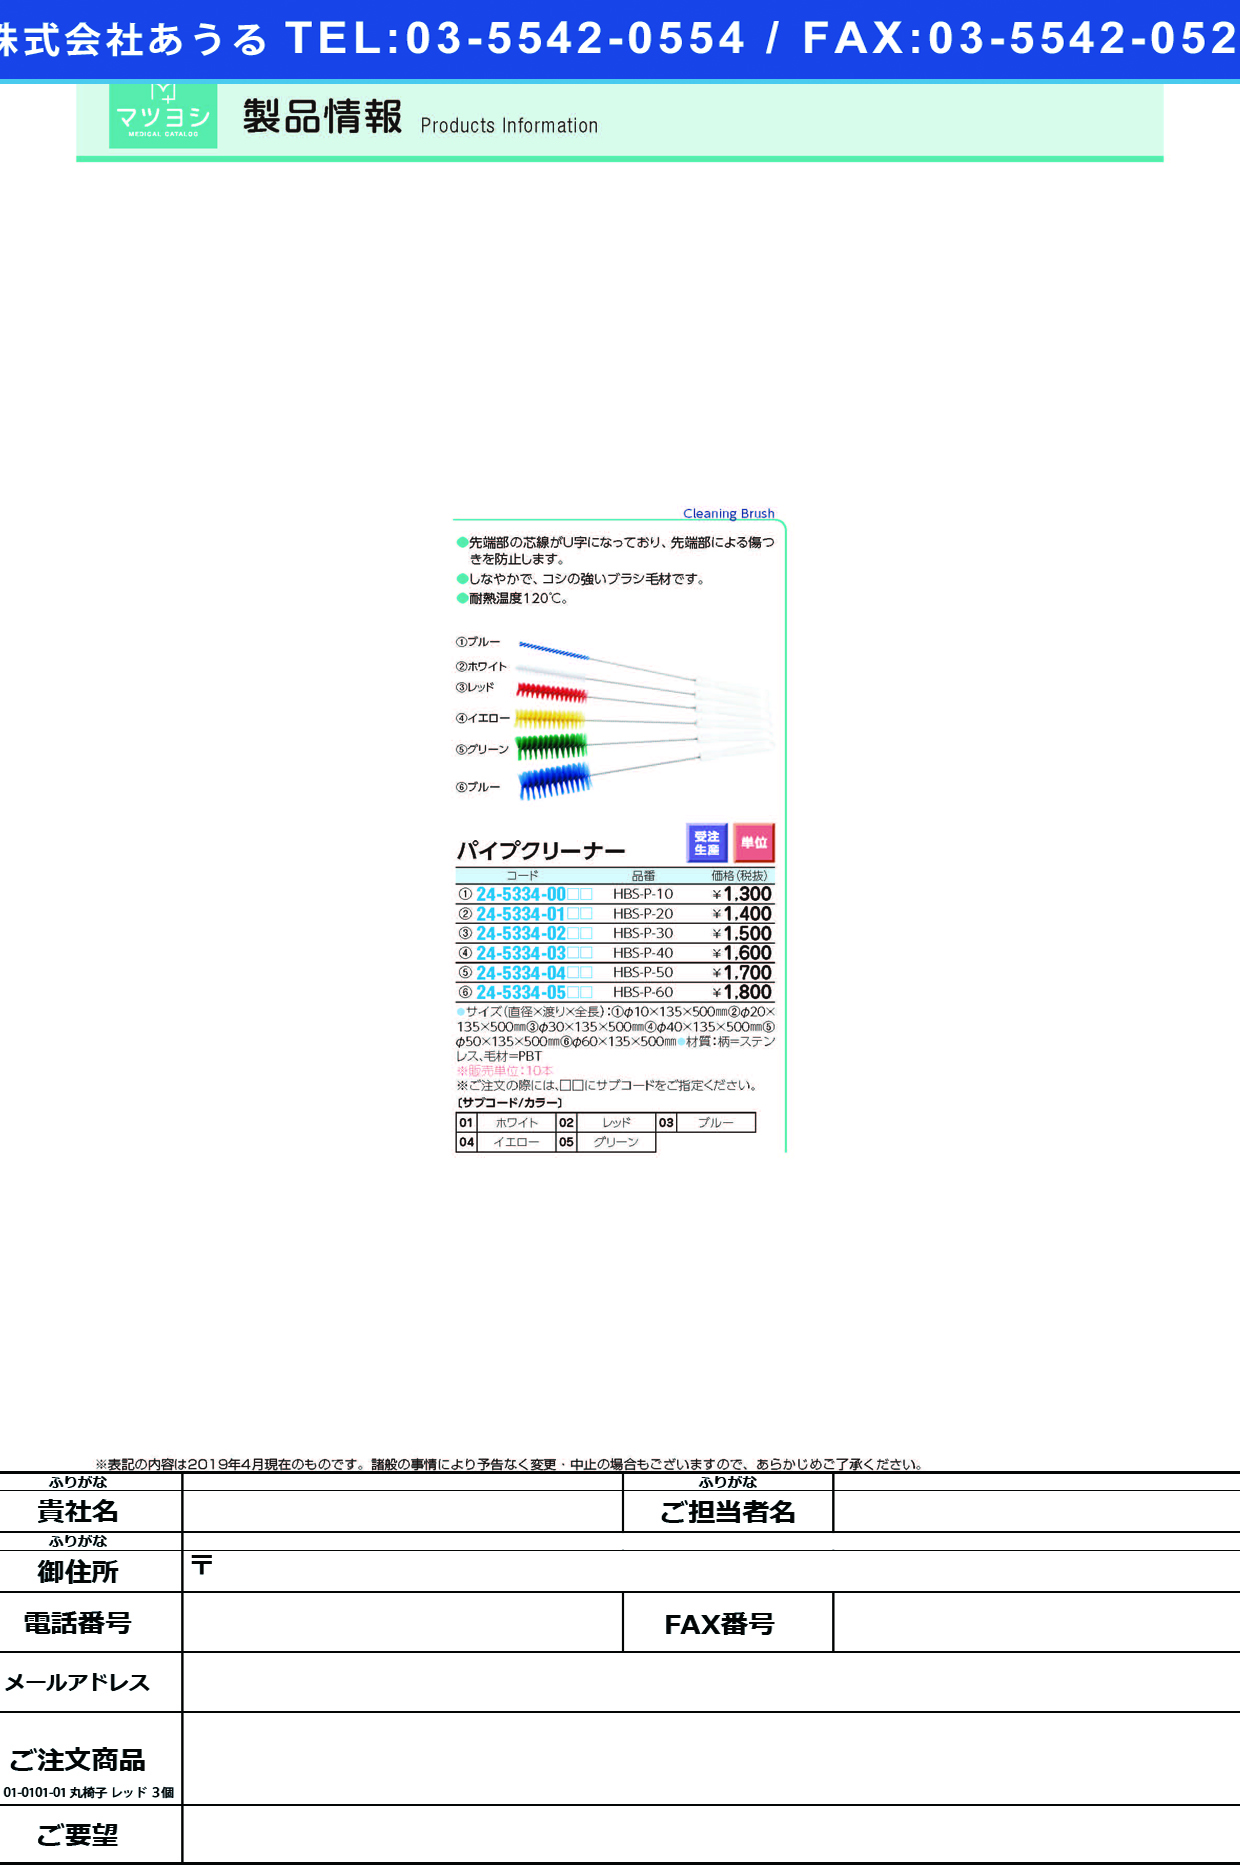 (24-5334-02)パイプクリーナー HBS-P-30 ﾊﾟｲﾌﾟｸﾘｰﾅｰ ホワイト【10本単位】【2019年カタログ商品】